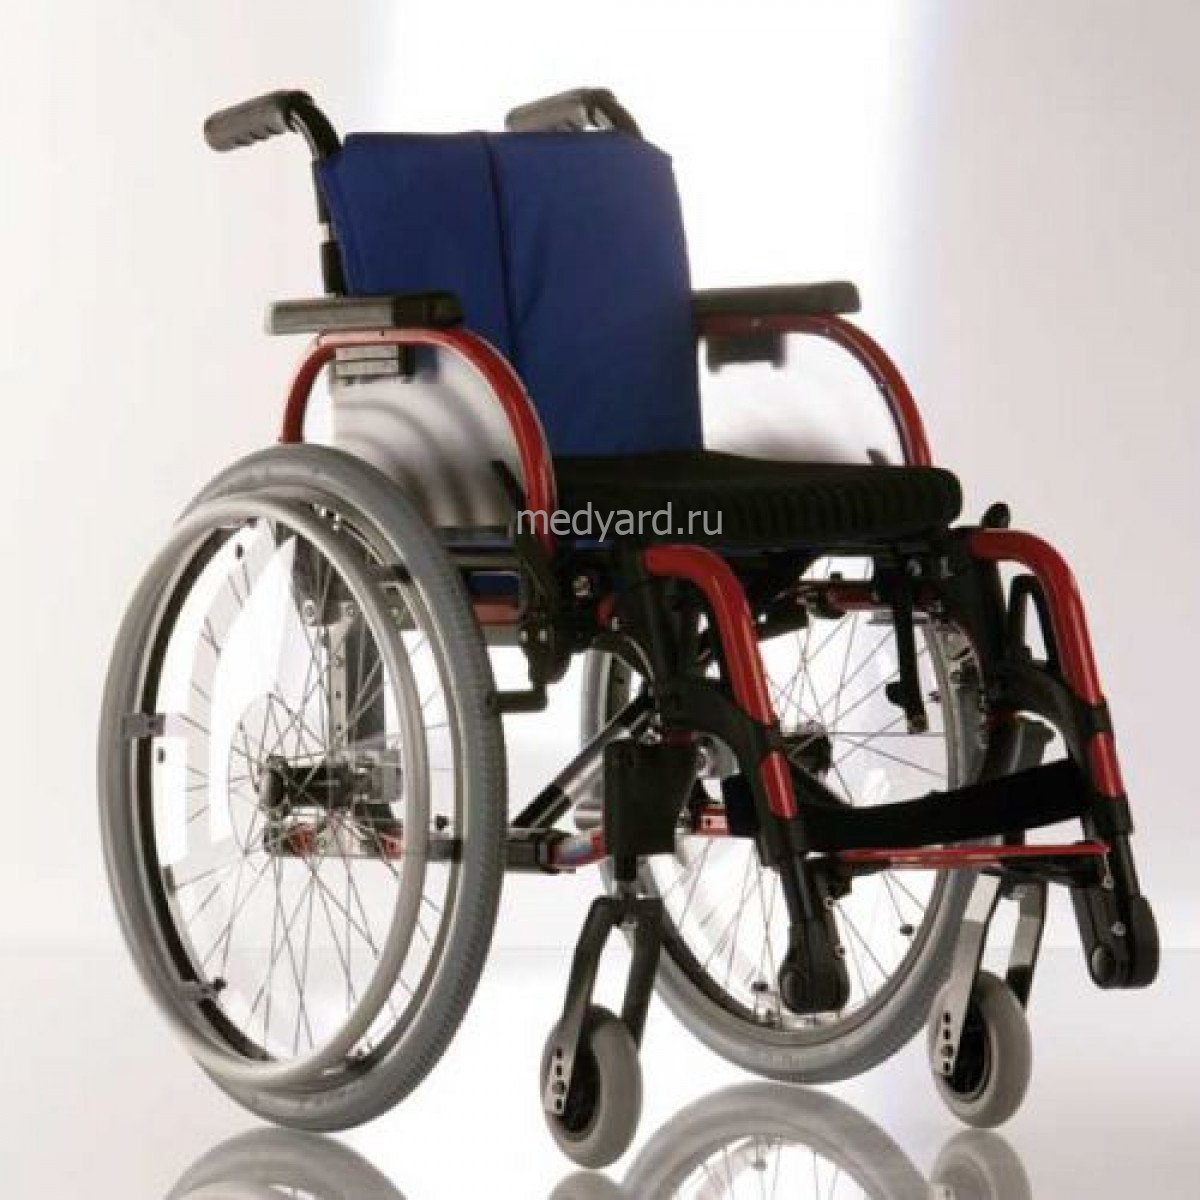 Коляска ottobock цена. Отто БОКК старт инвалидные коляски. Ottobock кресло-коляска. Ottobock старт кресло-коляска. Otto Bock коляска.